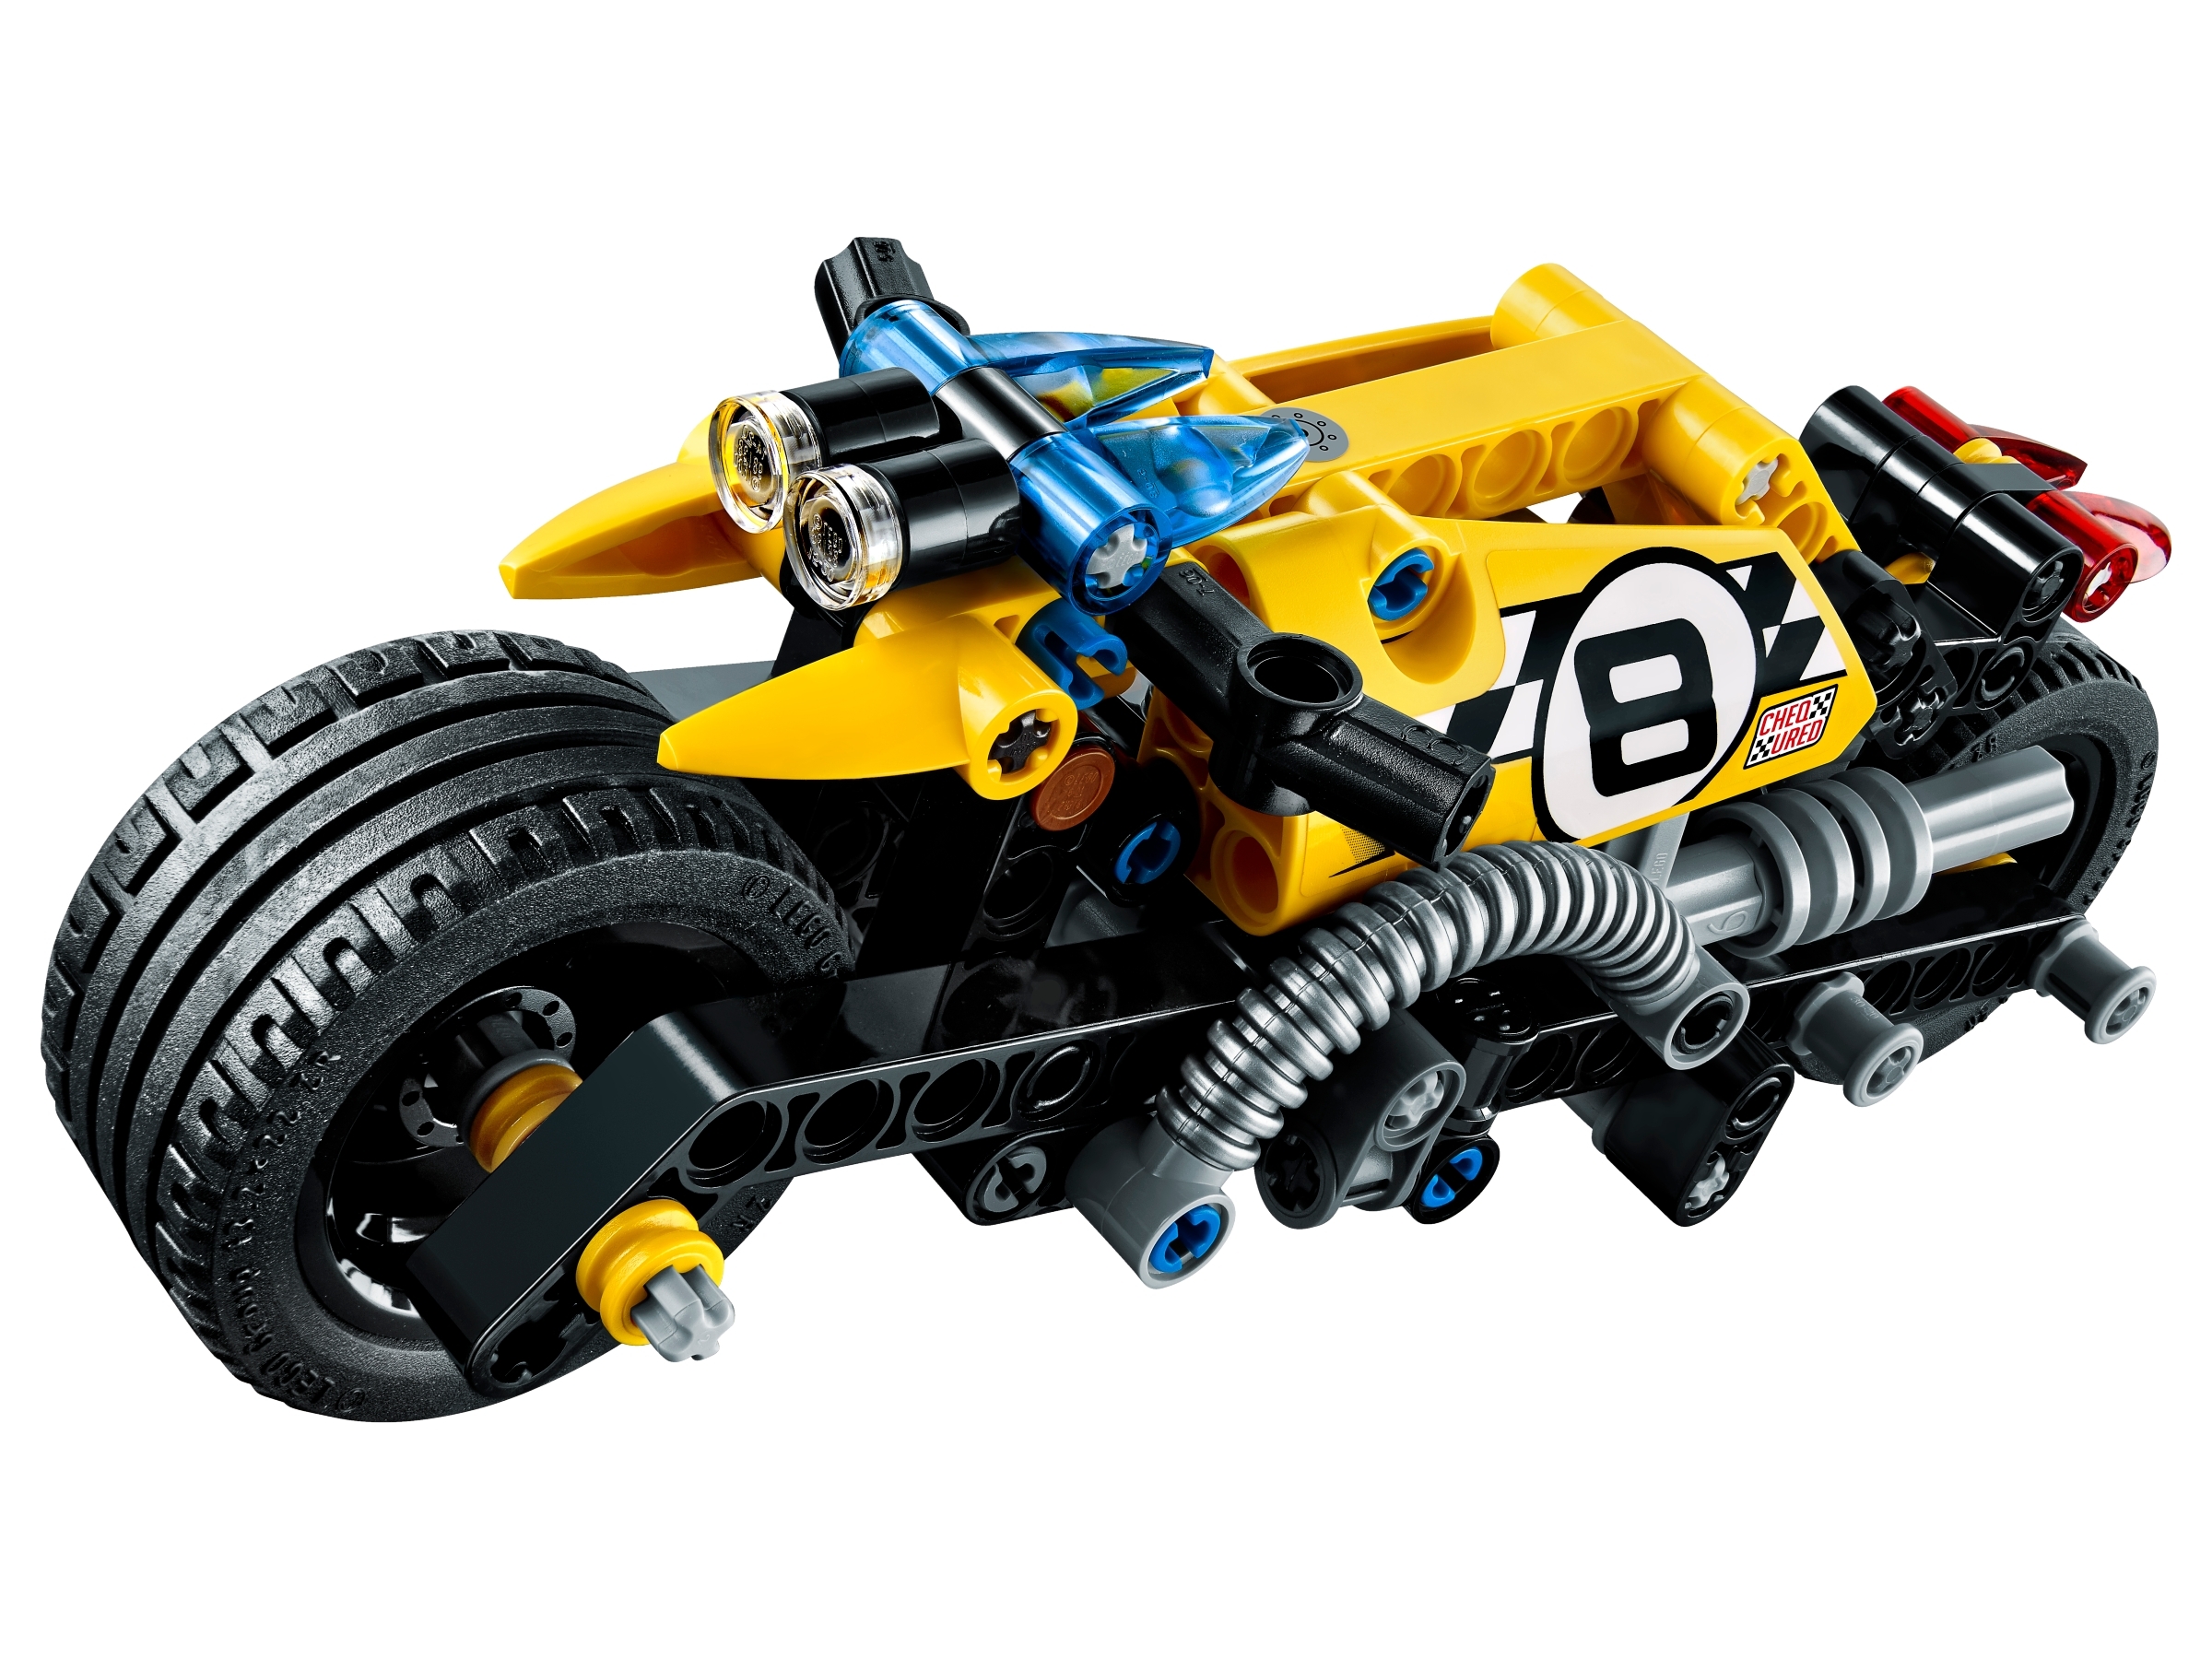 Brand New Sealed Damaged Box LEGO Technic Stunt Bike 42058 